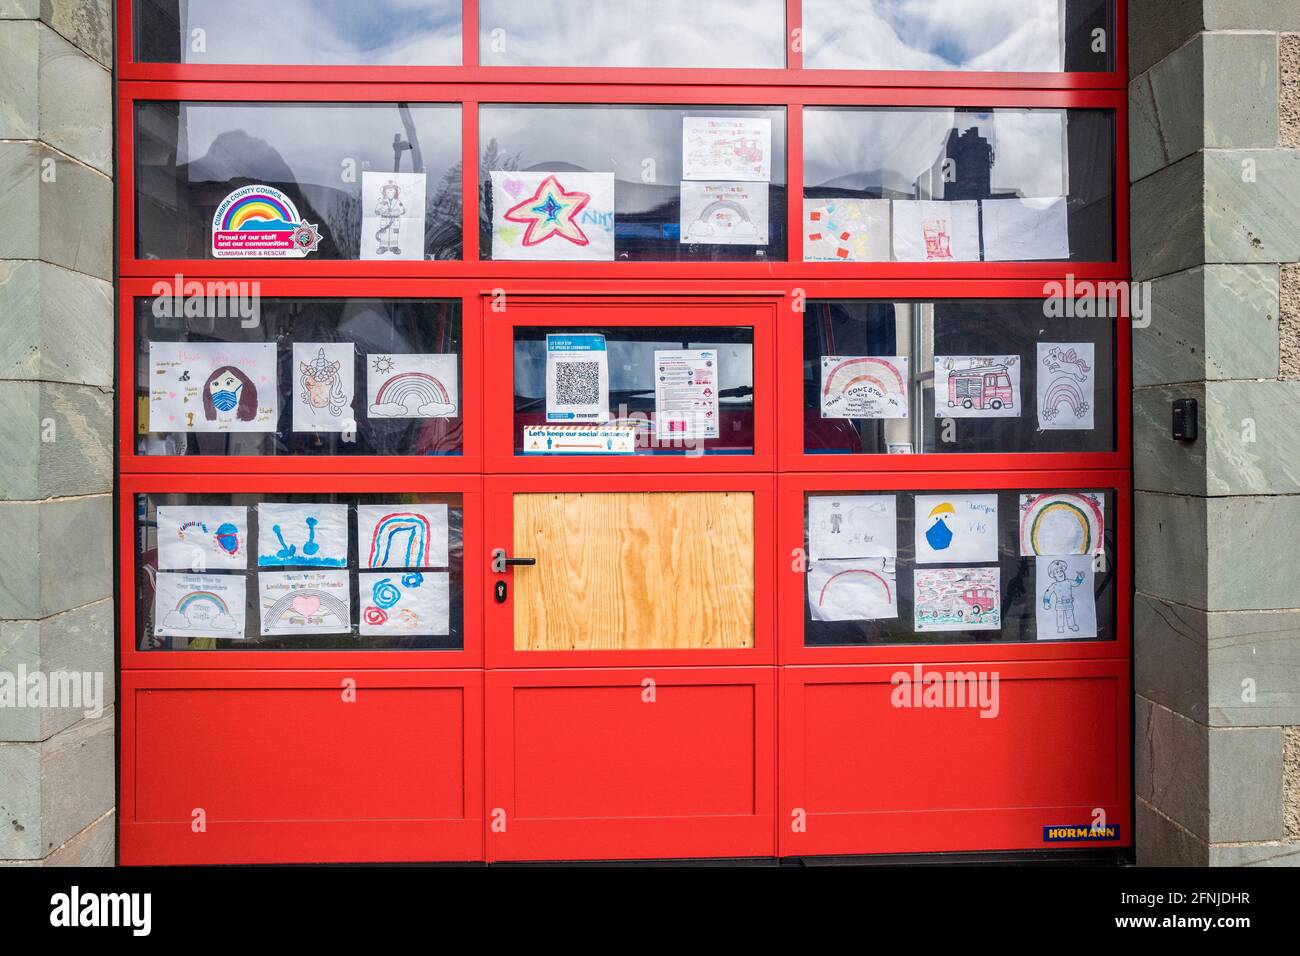 Plakate, die von Kleinkindern angefertigt wurden, um Schlüsselarbeiten und NHS-Mitarbeitern zu danken, wurden an die große rote Tür der Coniston Feuer- und Wiederauferstationsstation angebracht. Stockfoto